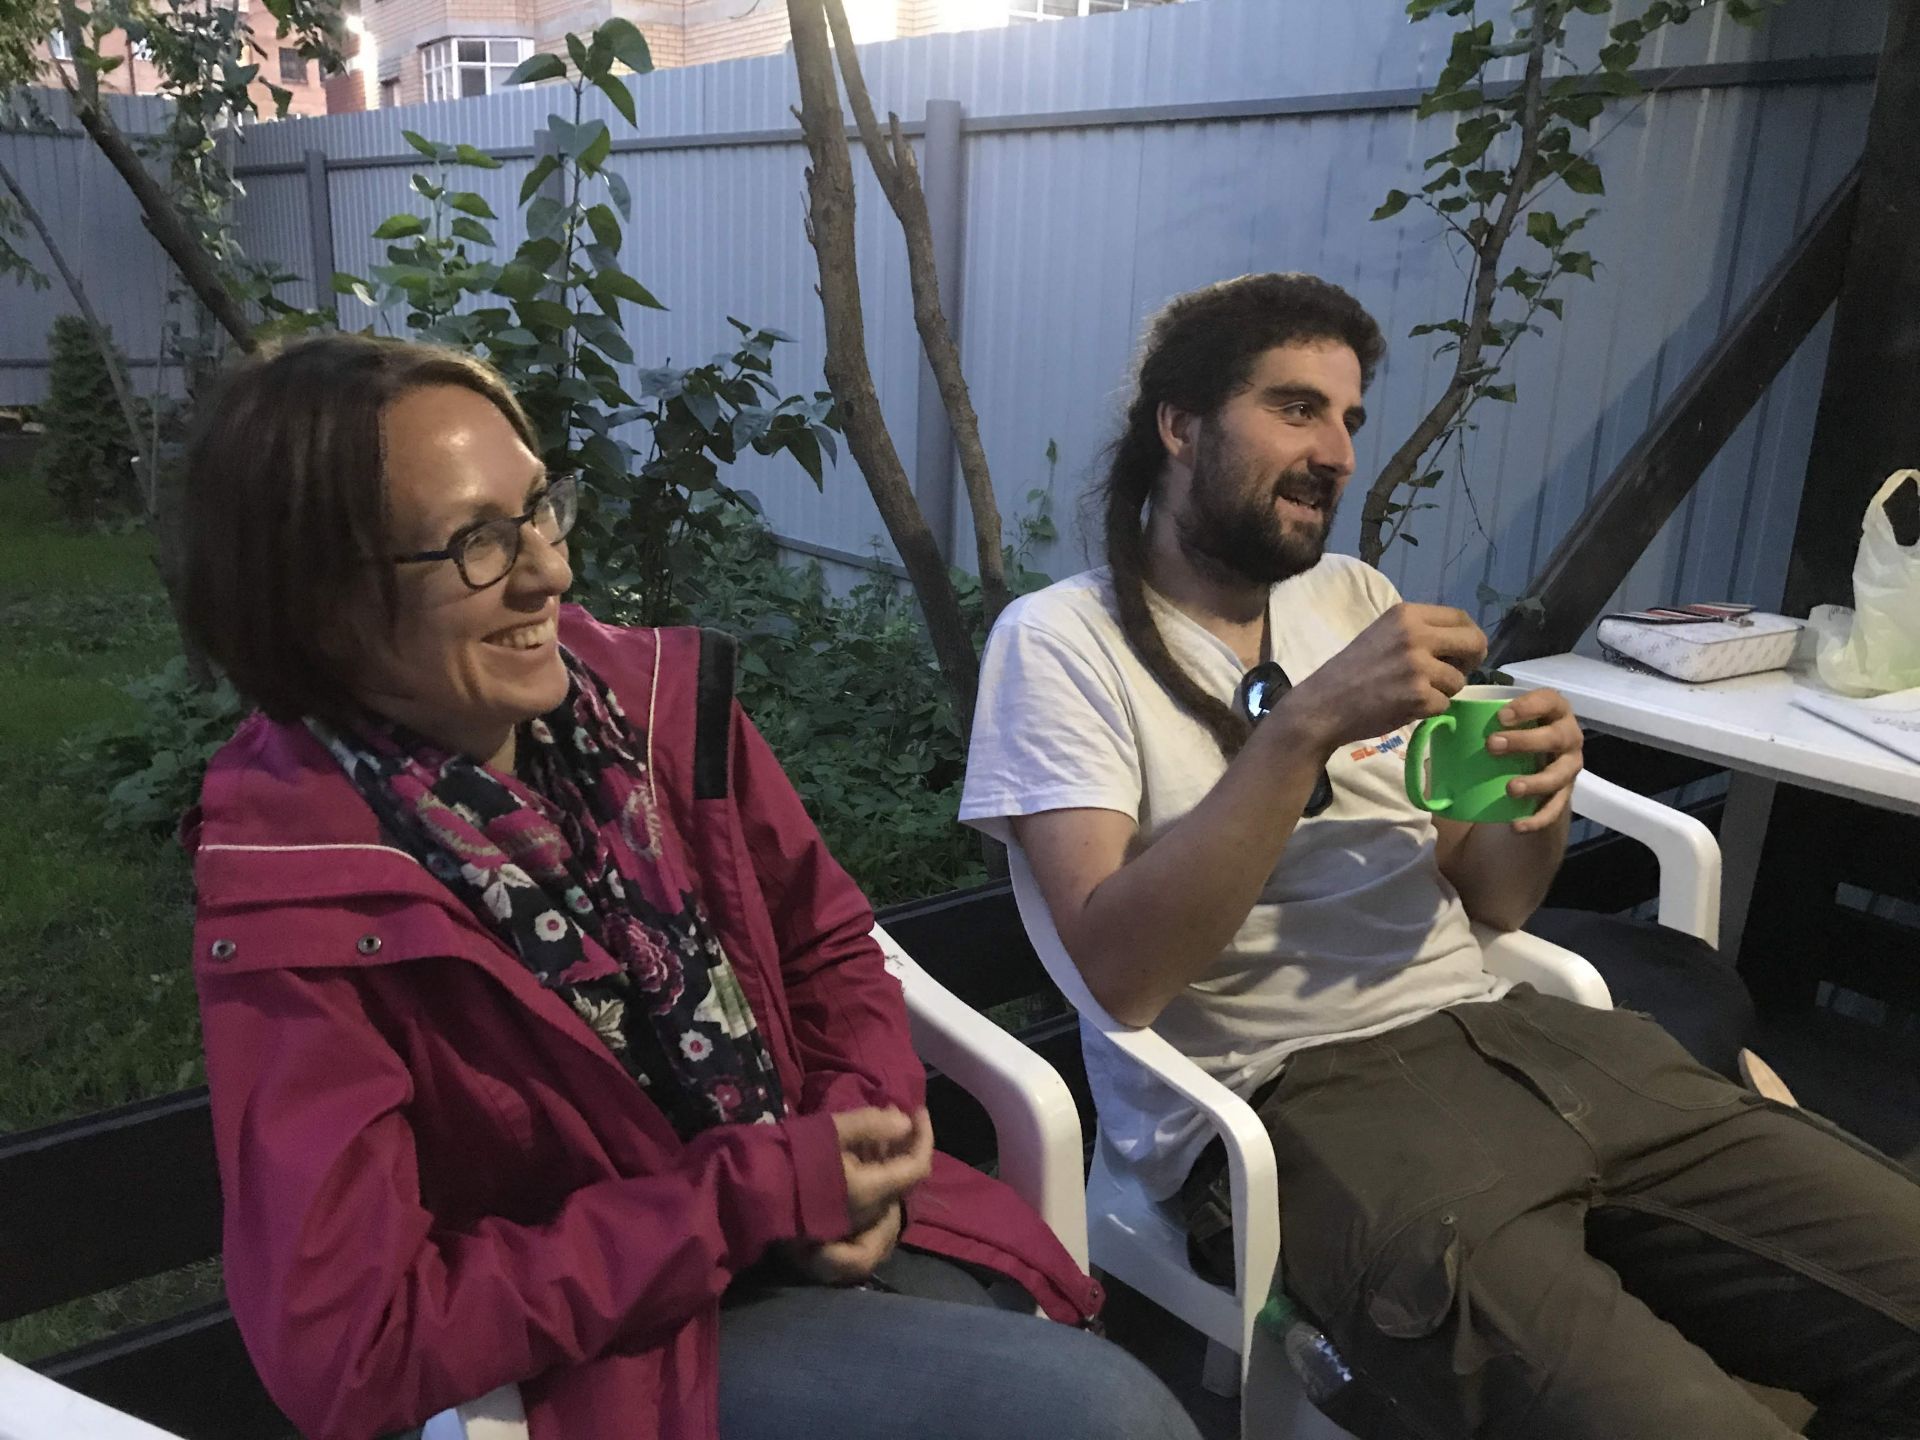 Фестиваль Тома Сойера в Казани: начали работать вместе с французами. 8 августа 2019